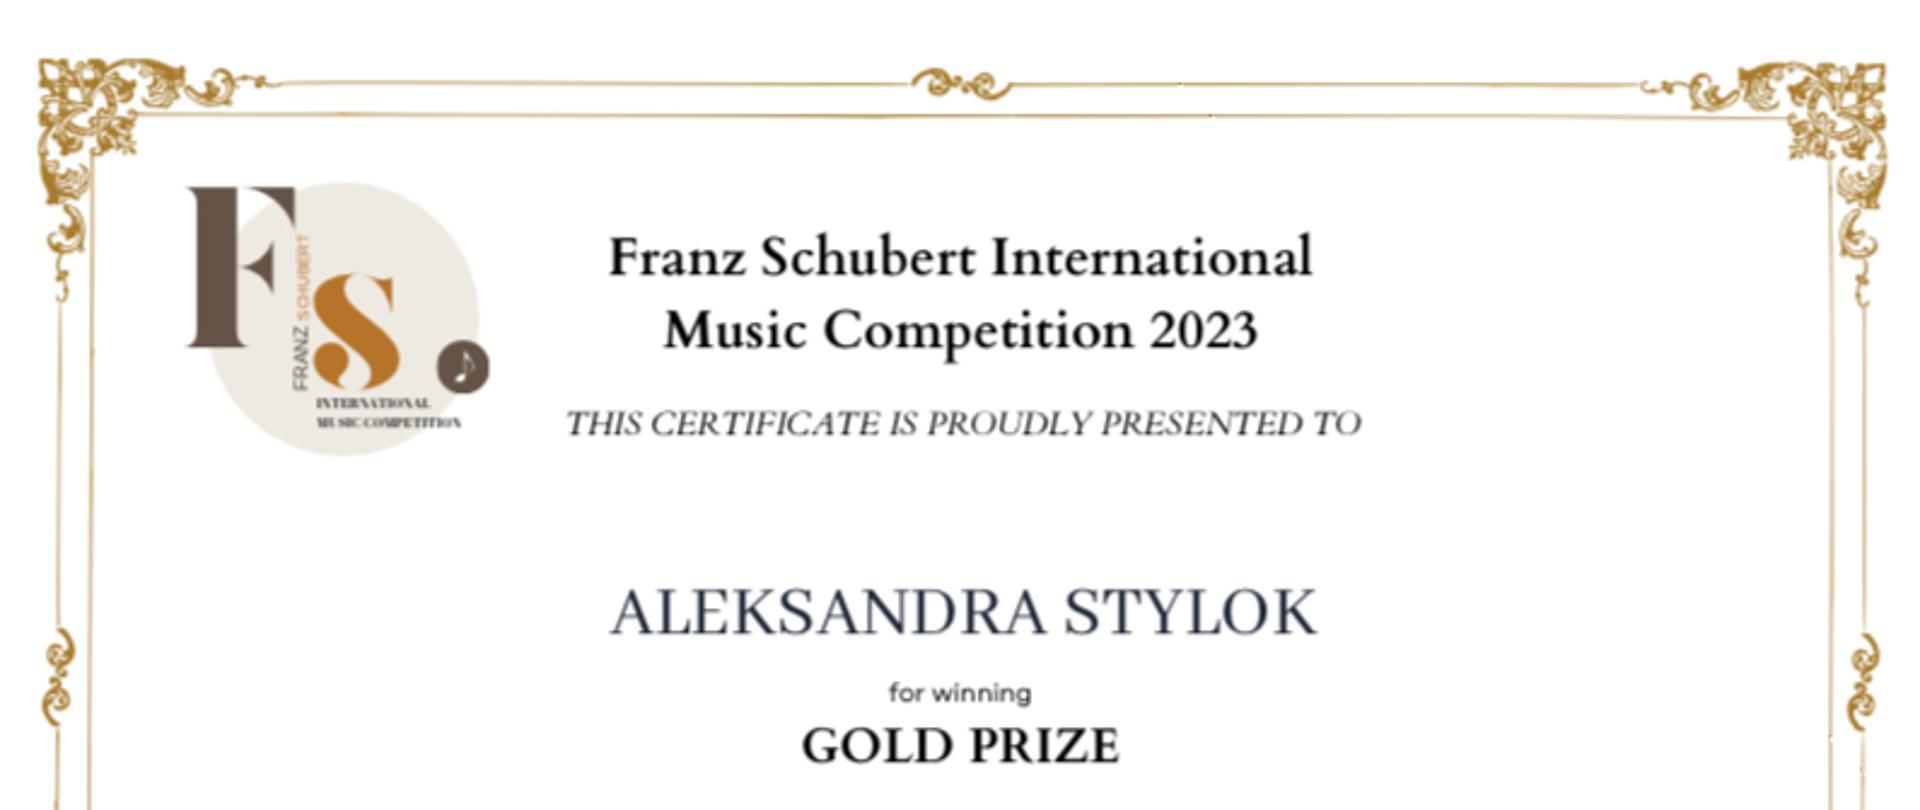 W tłumaczeniu: Dyplom Złotej Nagrody w kategorii zaawansowanej dla Aleksandry Stylok w Międzynarodowym Konkursie Muzycznym im. Franza Schuberta 2023, sezon 1, edycja online.